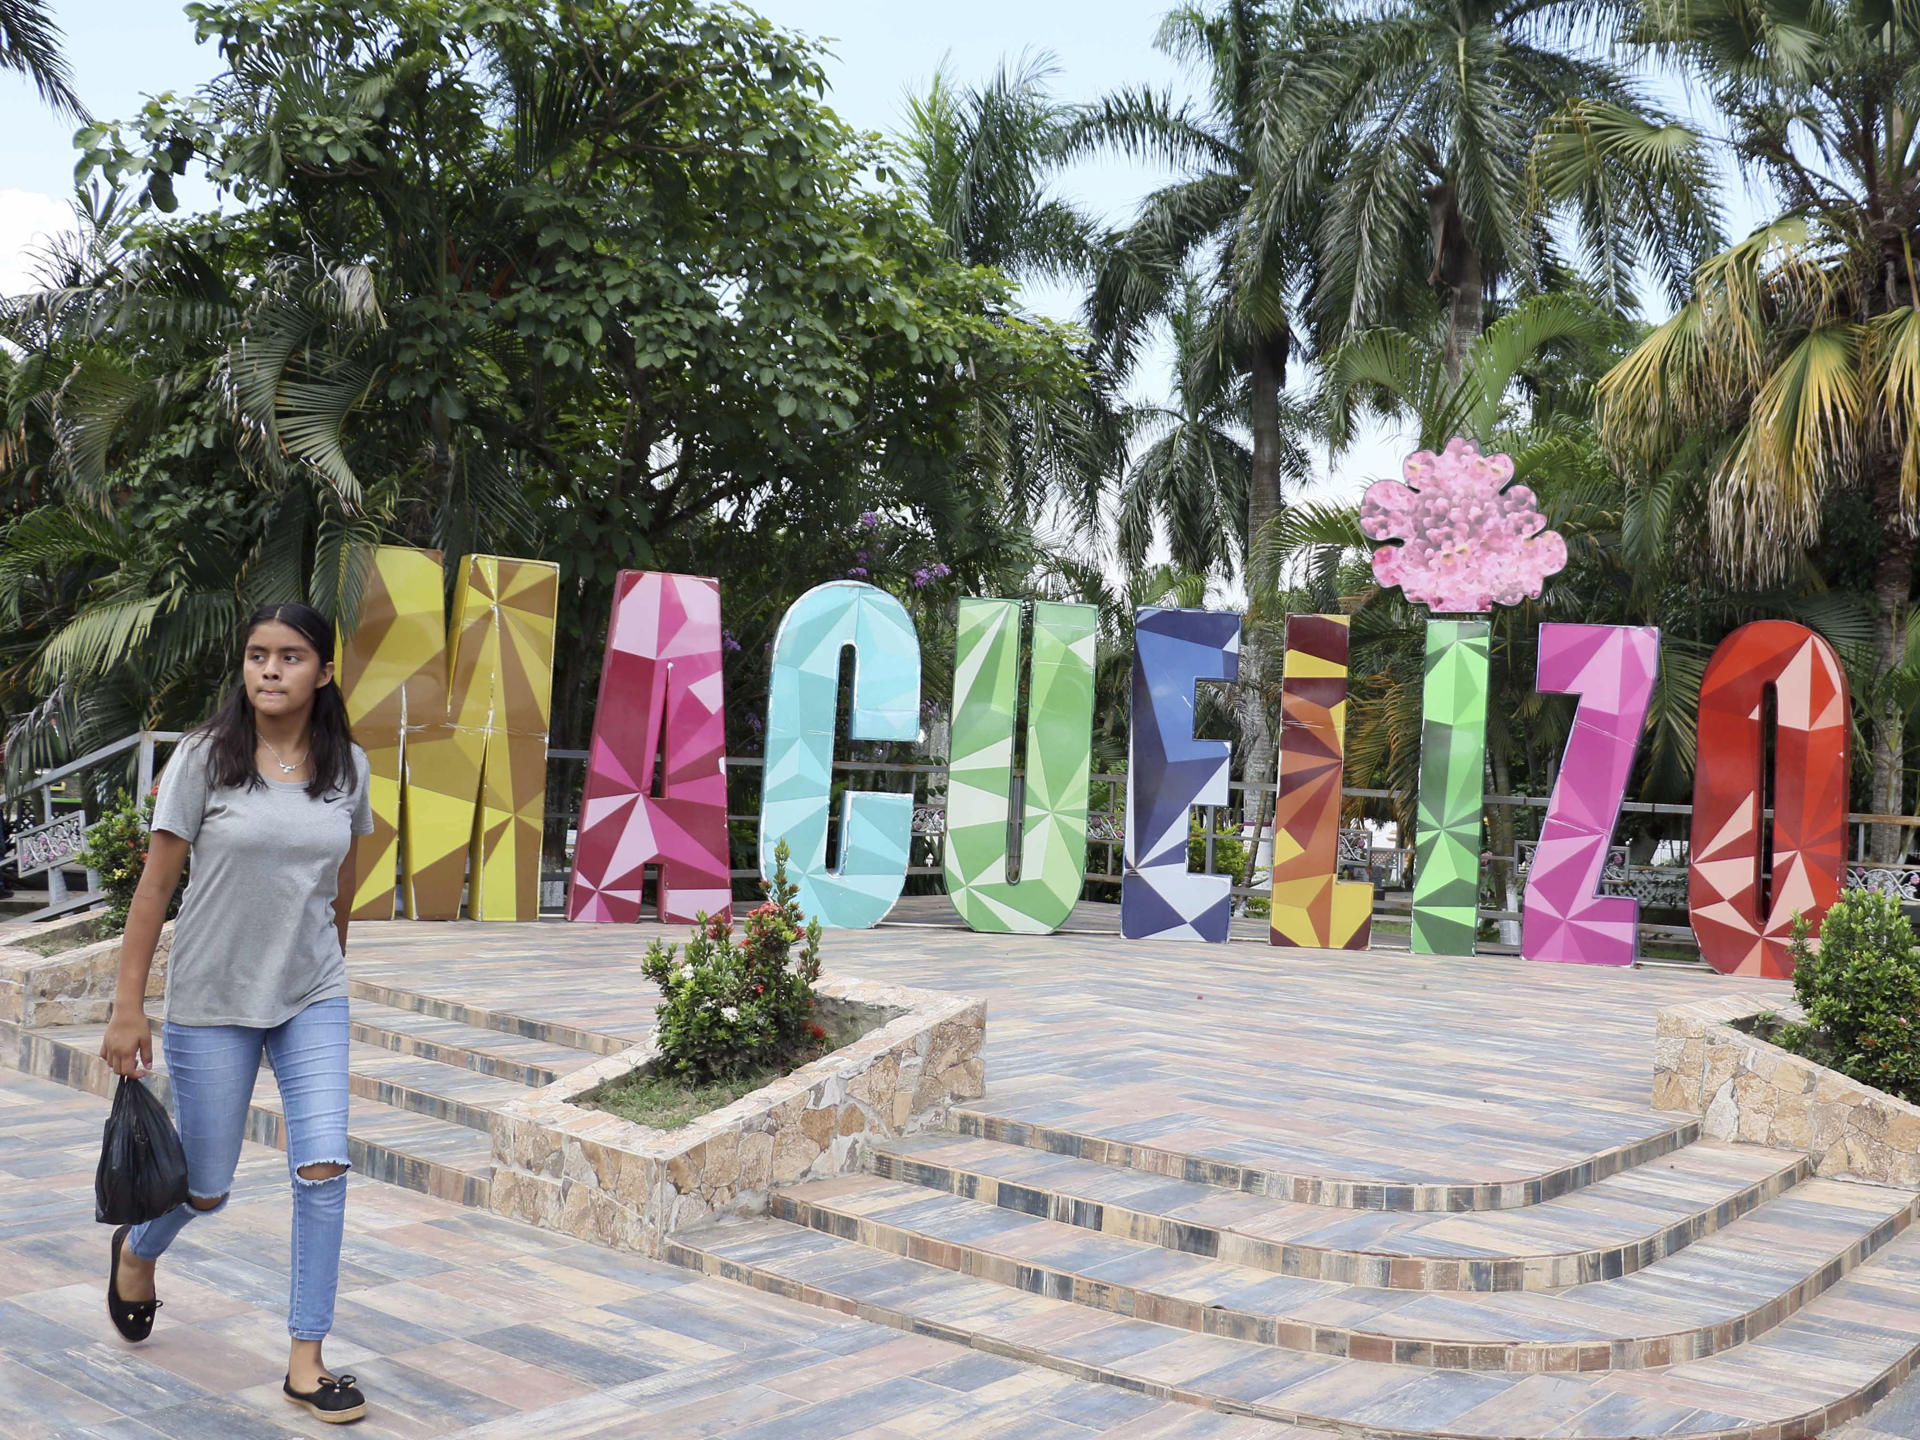 Macuelizo, pueblo hondureño recuerda su origen echando de menos a sus migrantes pobres